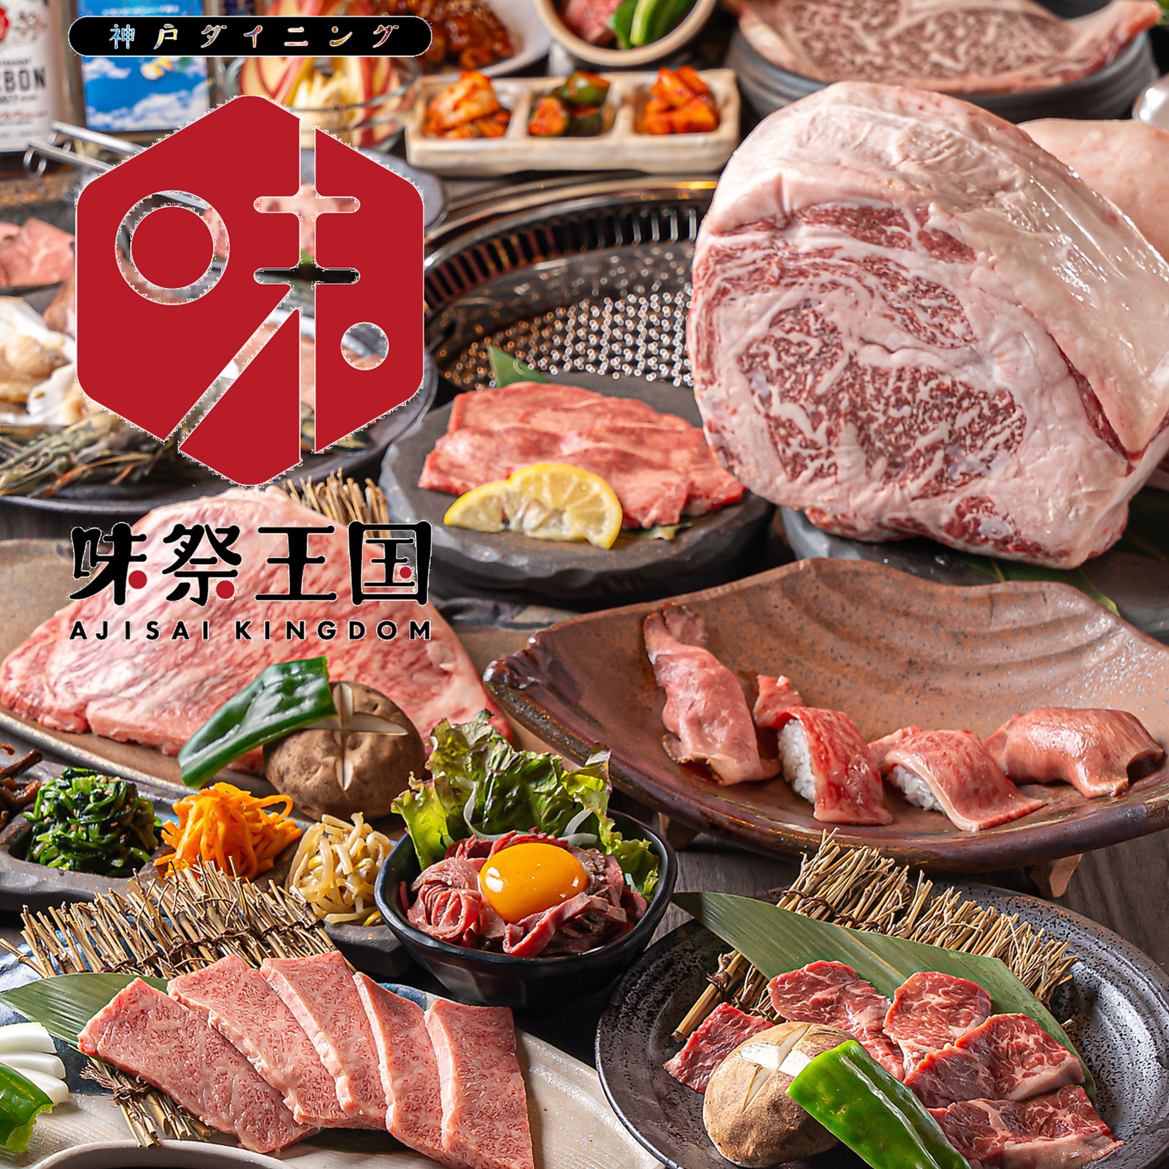 优质肉类，实惠价格！烤肉75分钟自助2,180日元（含税）～